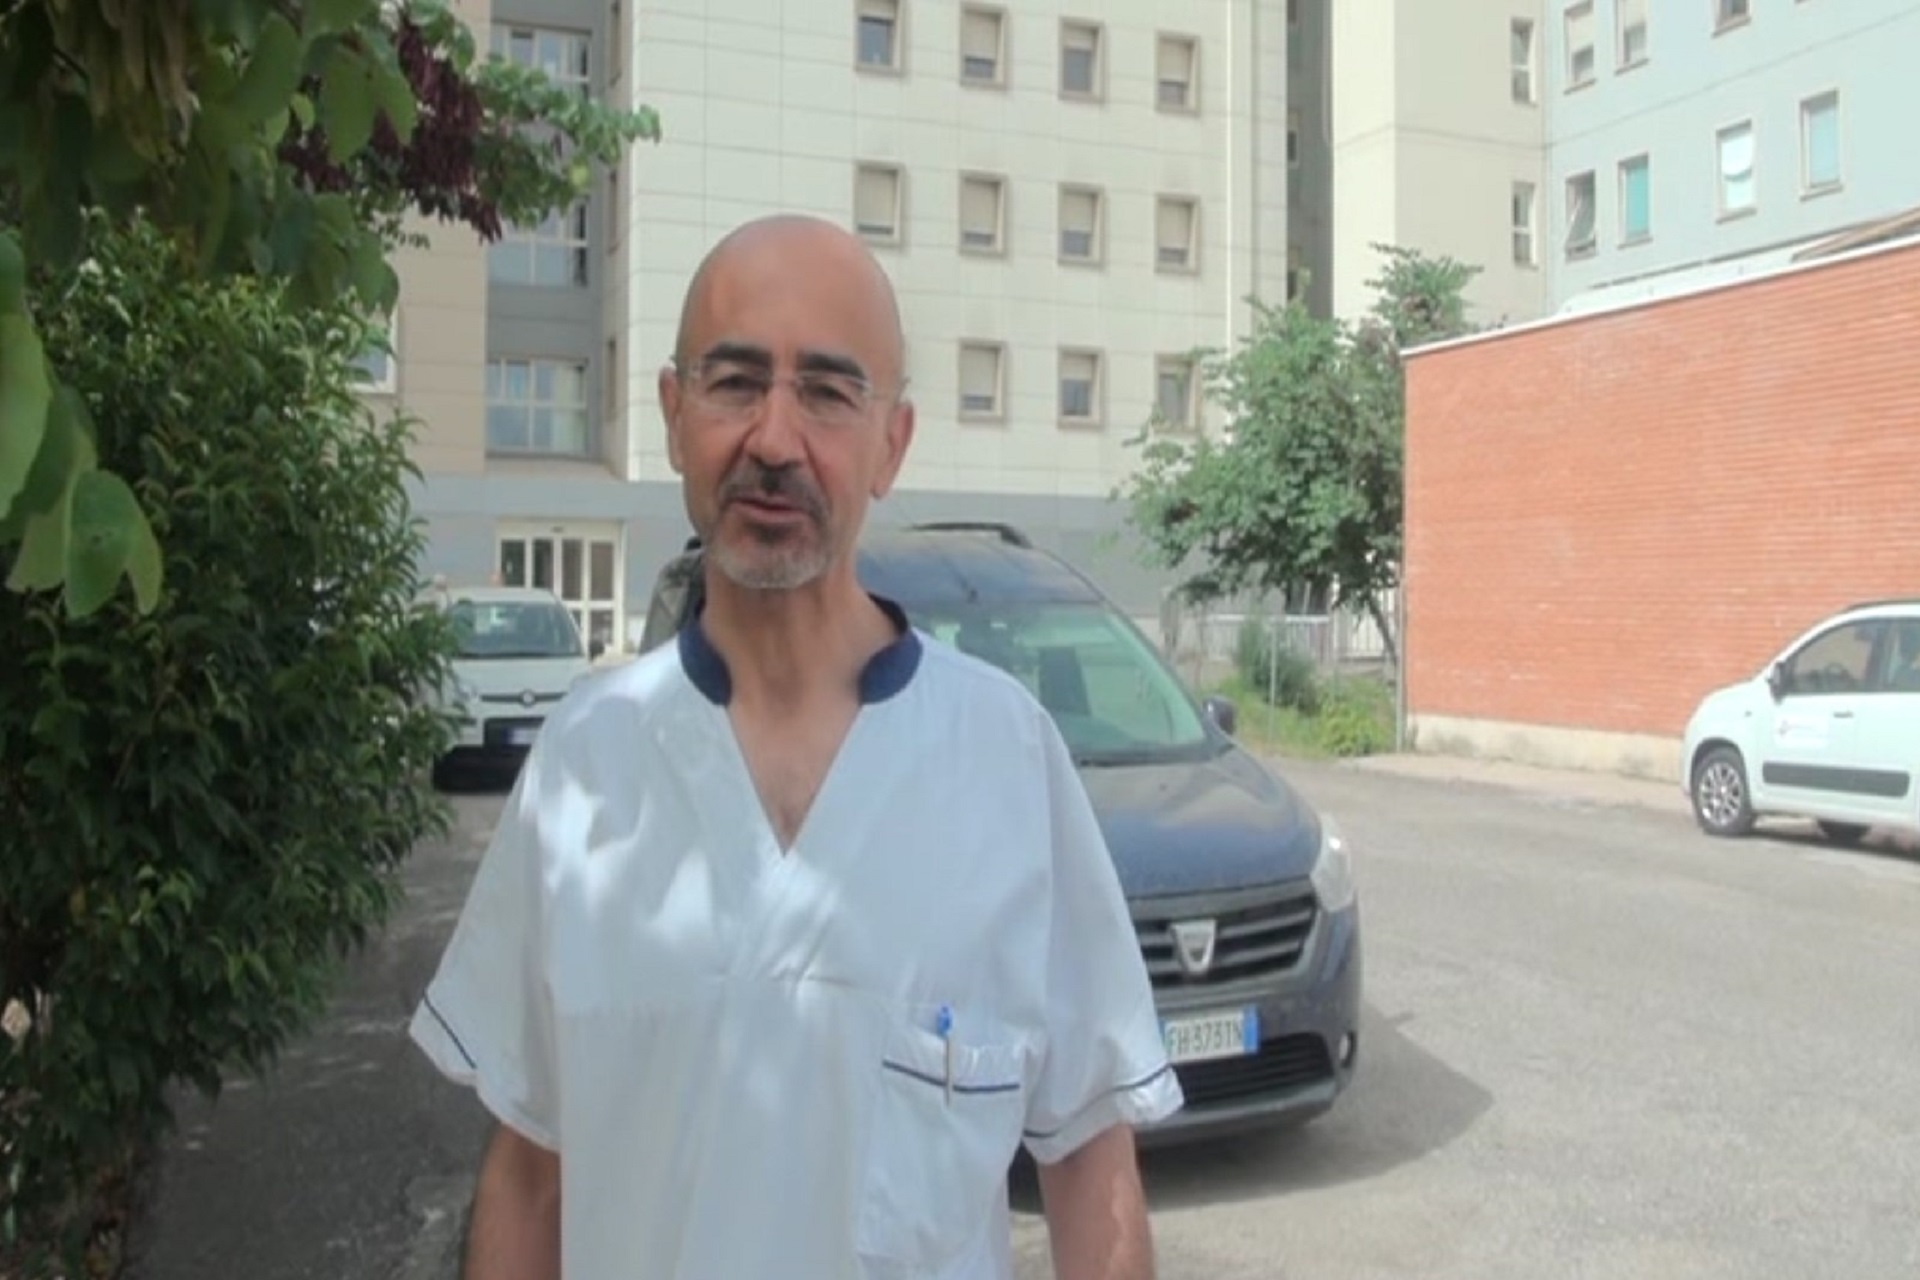 Ospedali, il nuovo direttore sanitario: “La risorsa sono le persone”